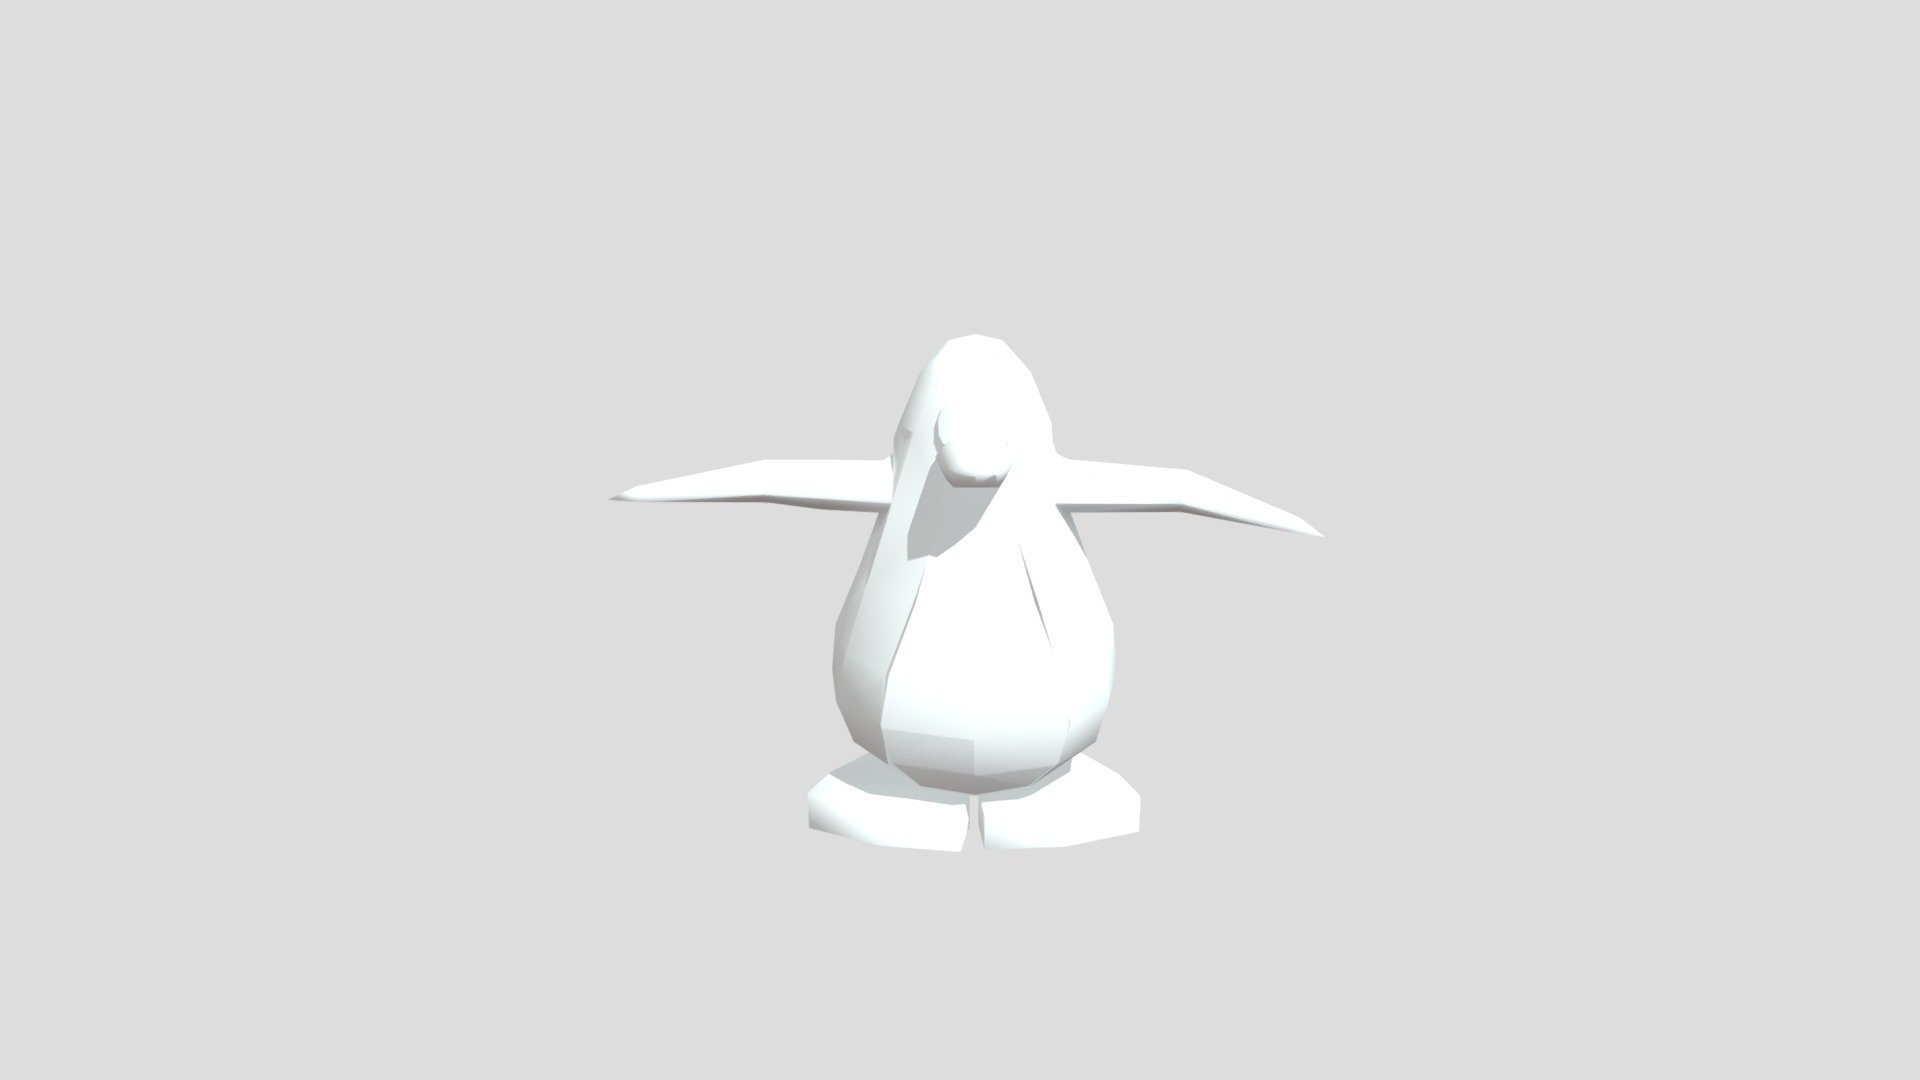 Penguin (Club Penguin) - Download Free 3D model by timeforrick  (@timeforrick) [646e334]